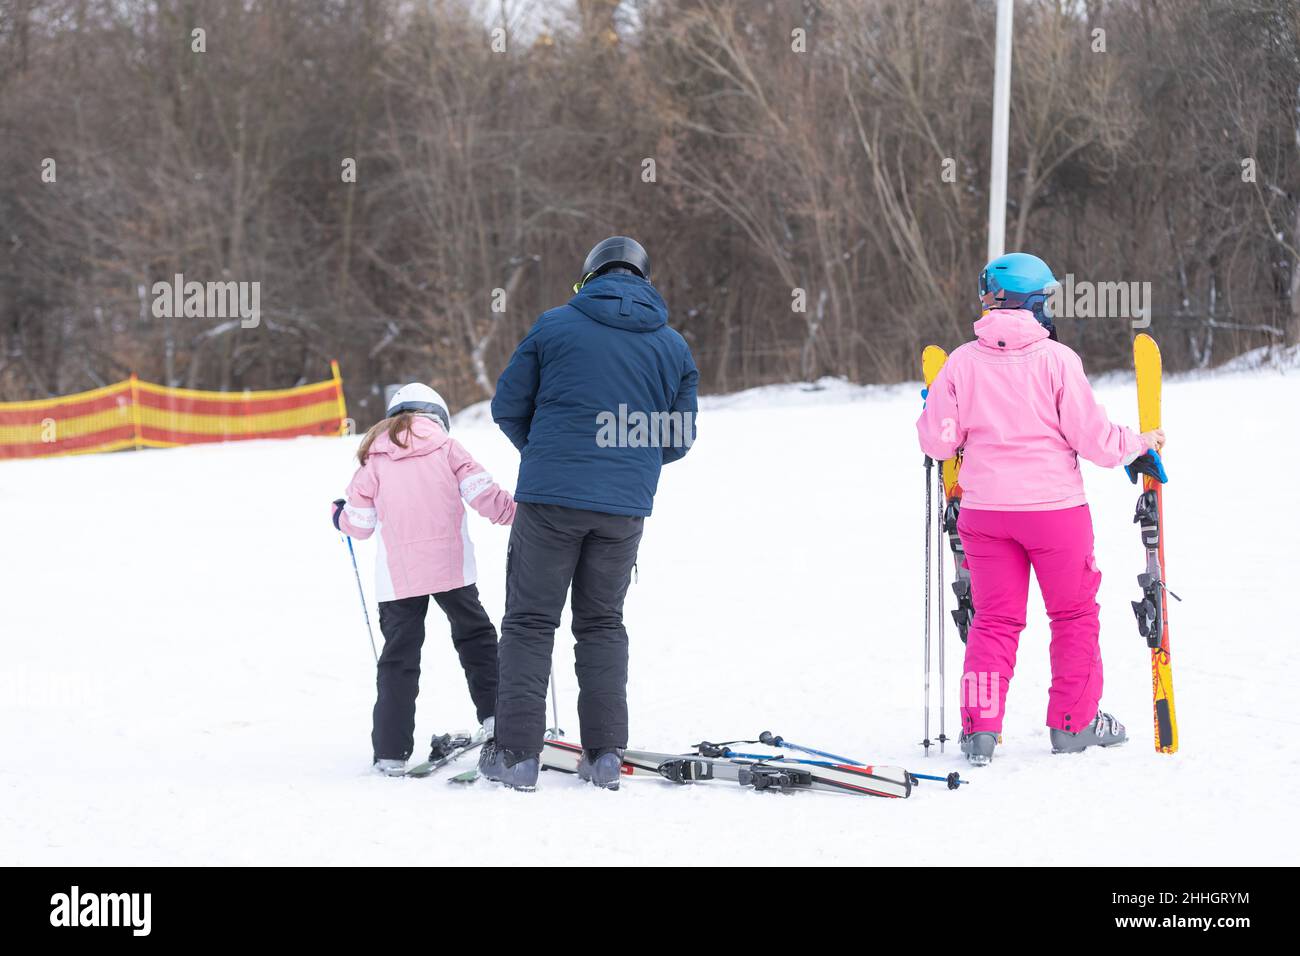 Skiing, winter, ski lesson - family skiing. Stock Photo